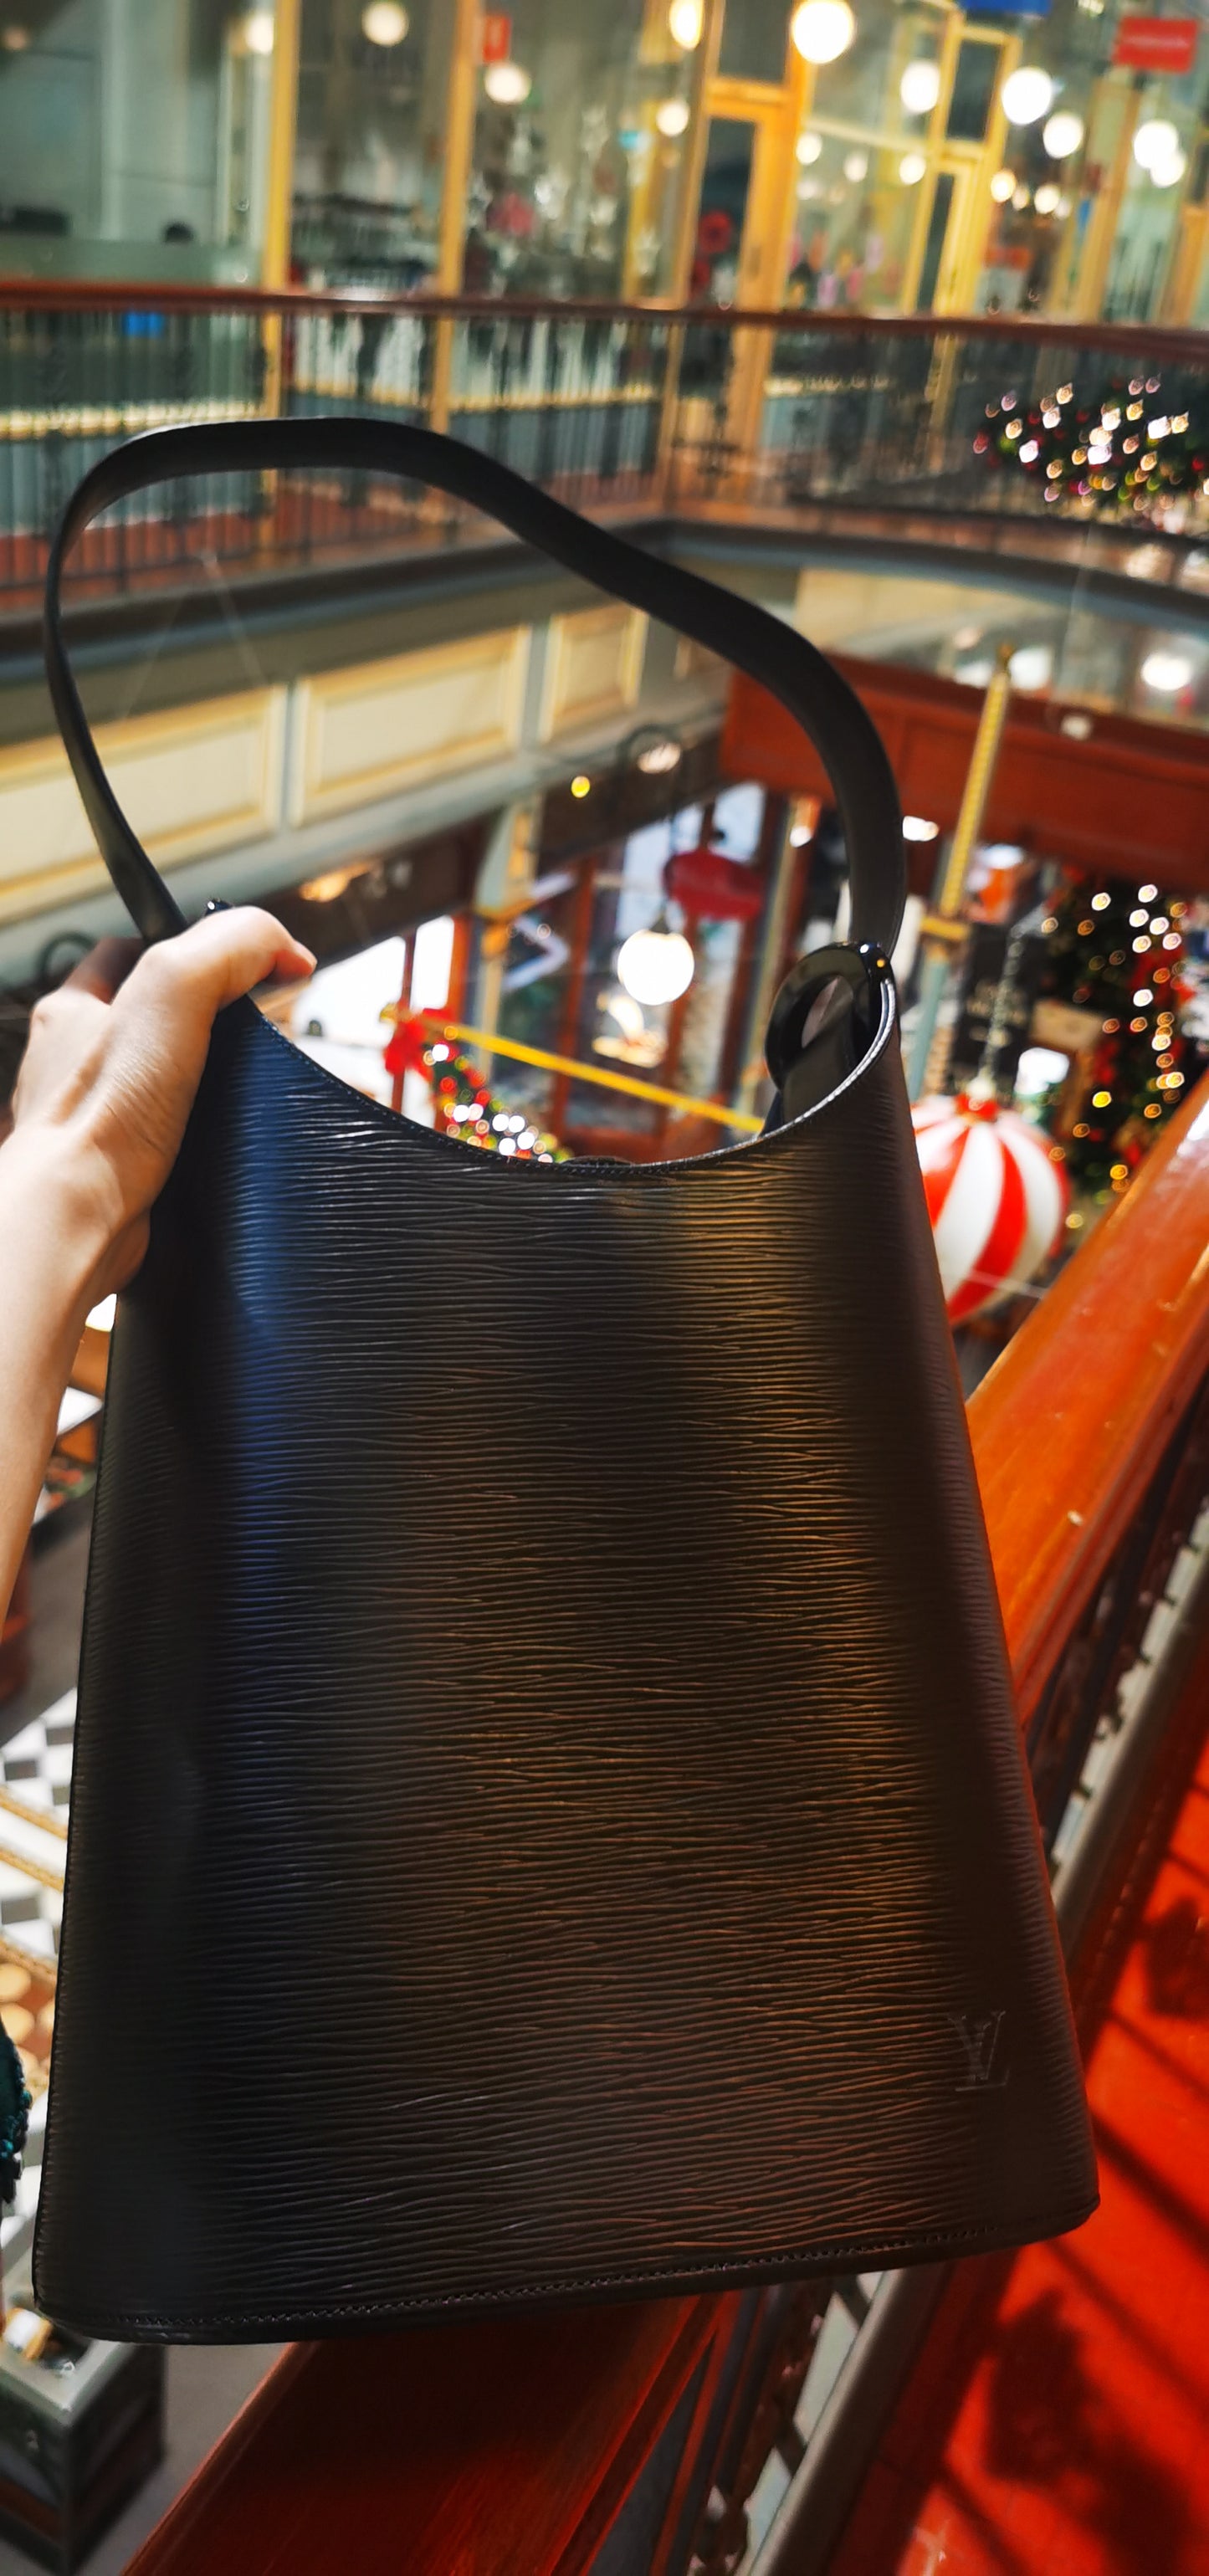 Pre-Owned Louis Vuitton Verseau Shoulder Bag 